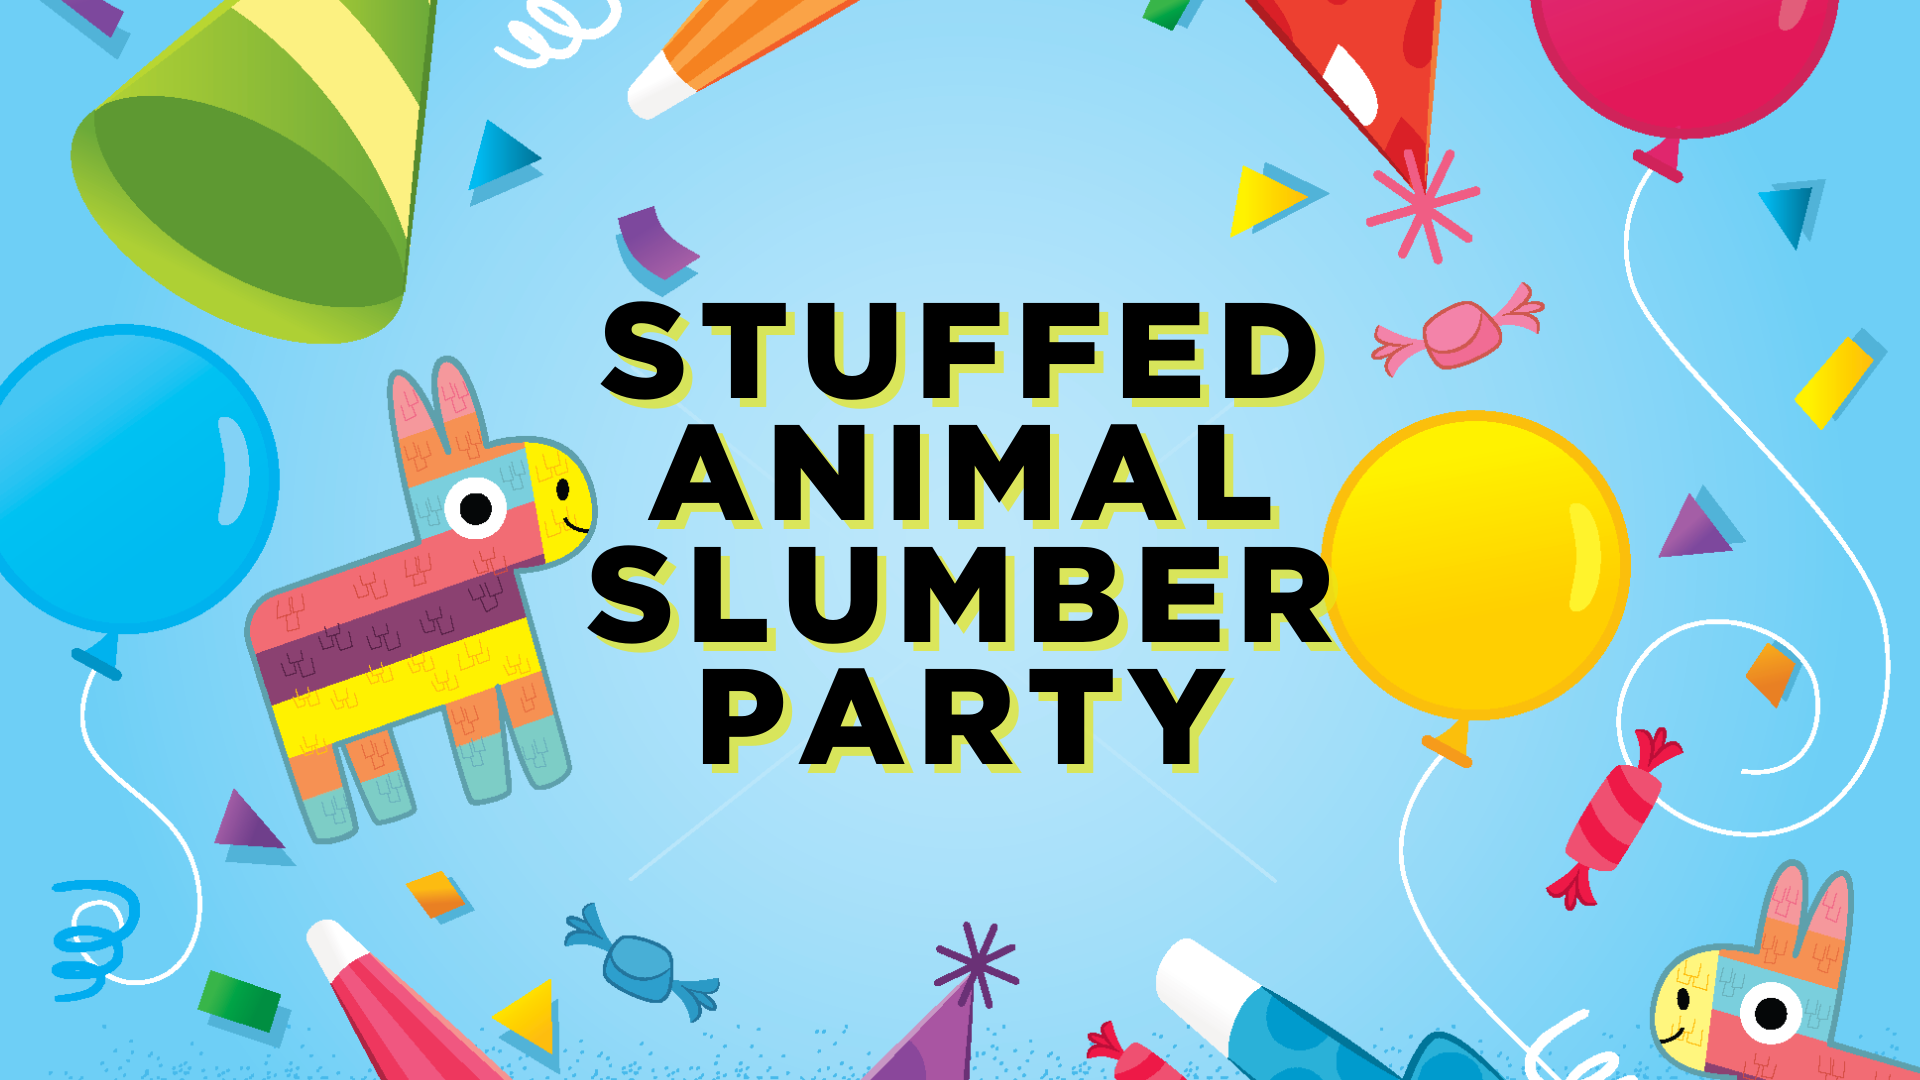 Image: Stuffed Animal Slumber Party